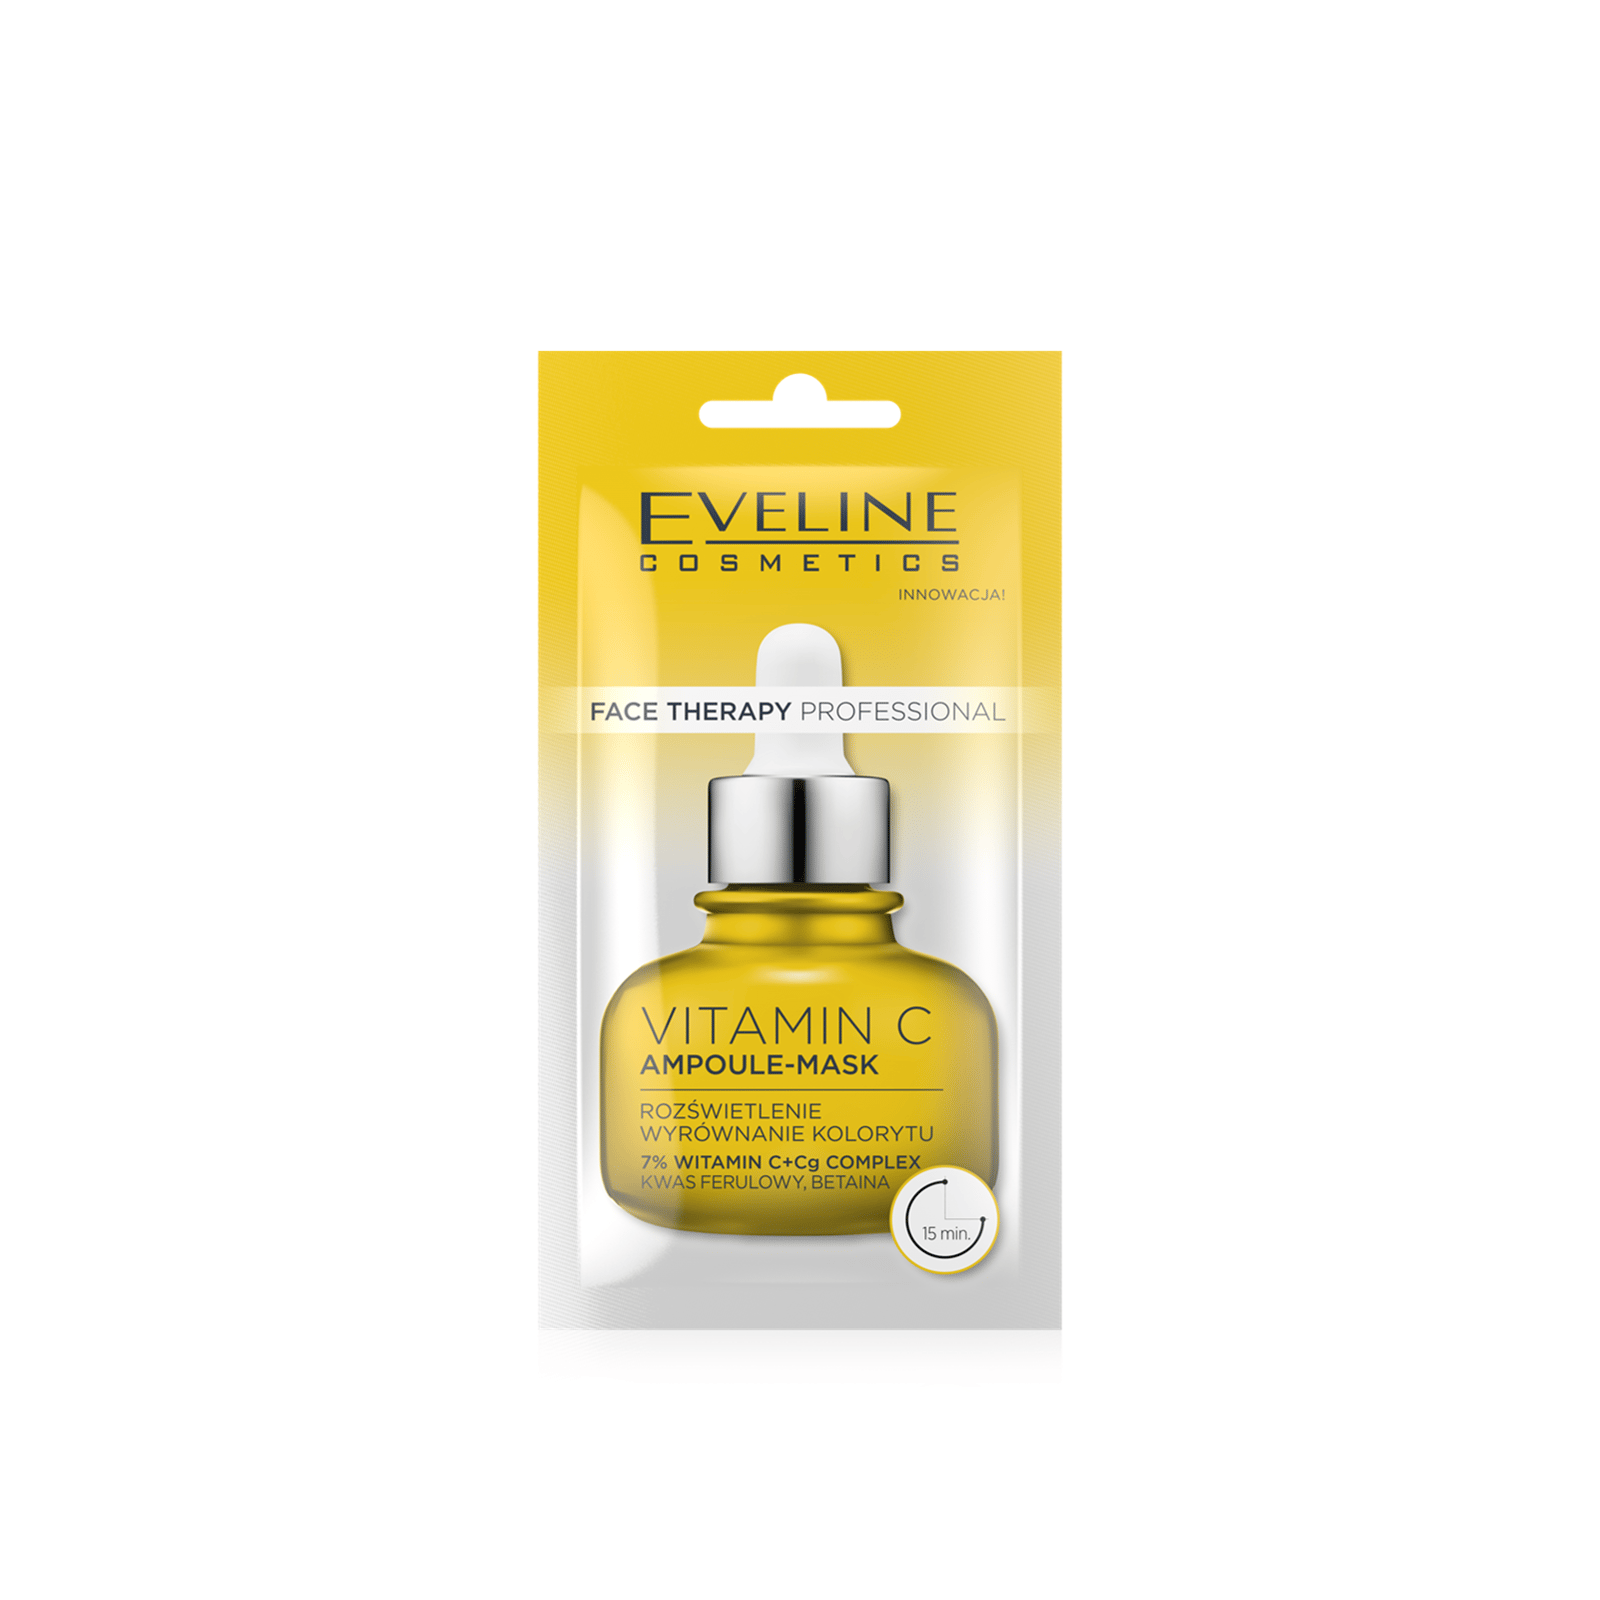 Eveline Cosmetics Face Therapy Vitamin C Ampoule-Mask 8ml (0.28 fl oz)